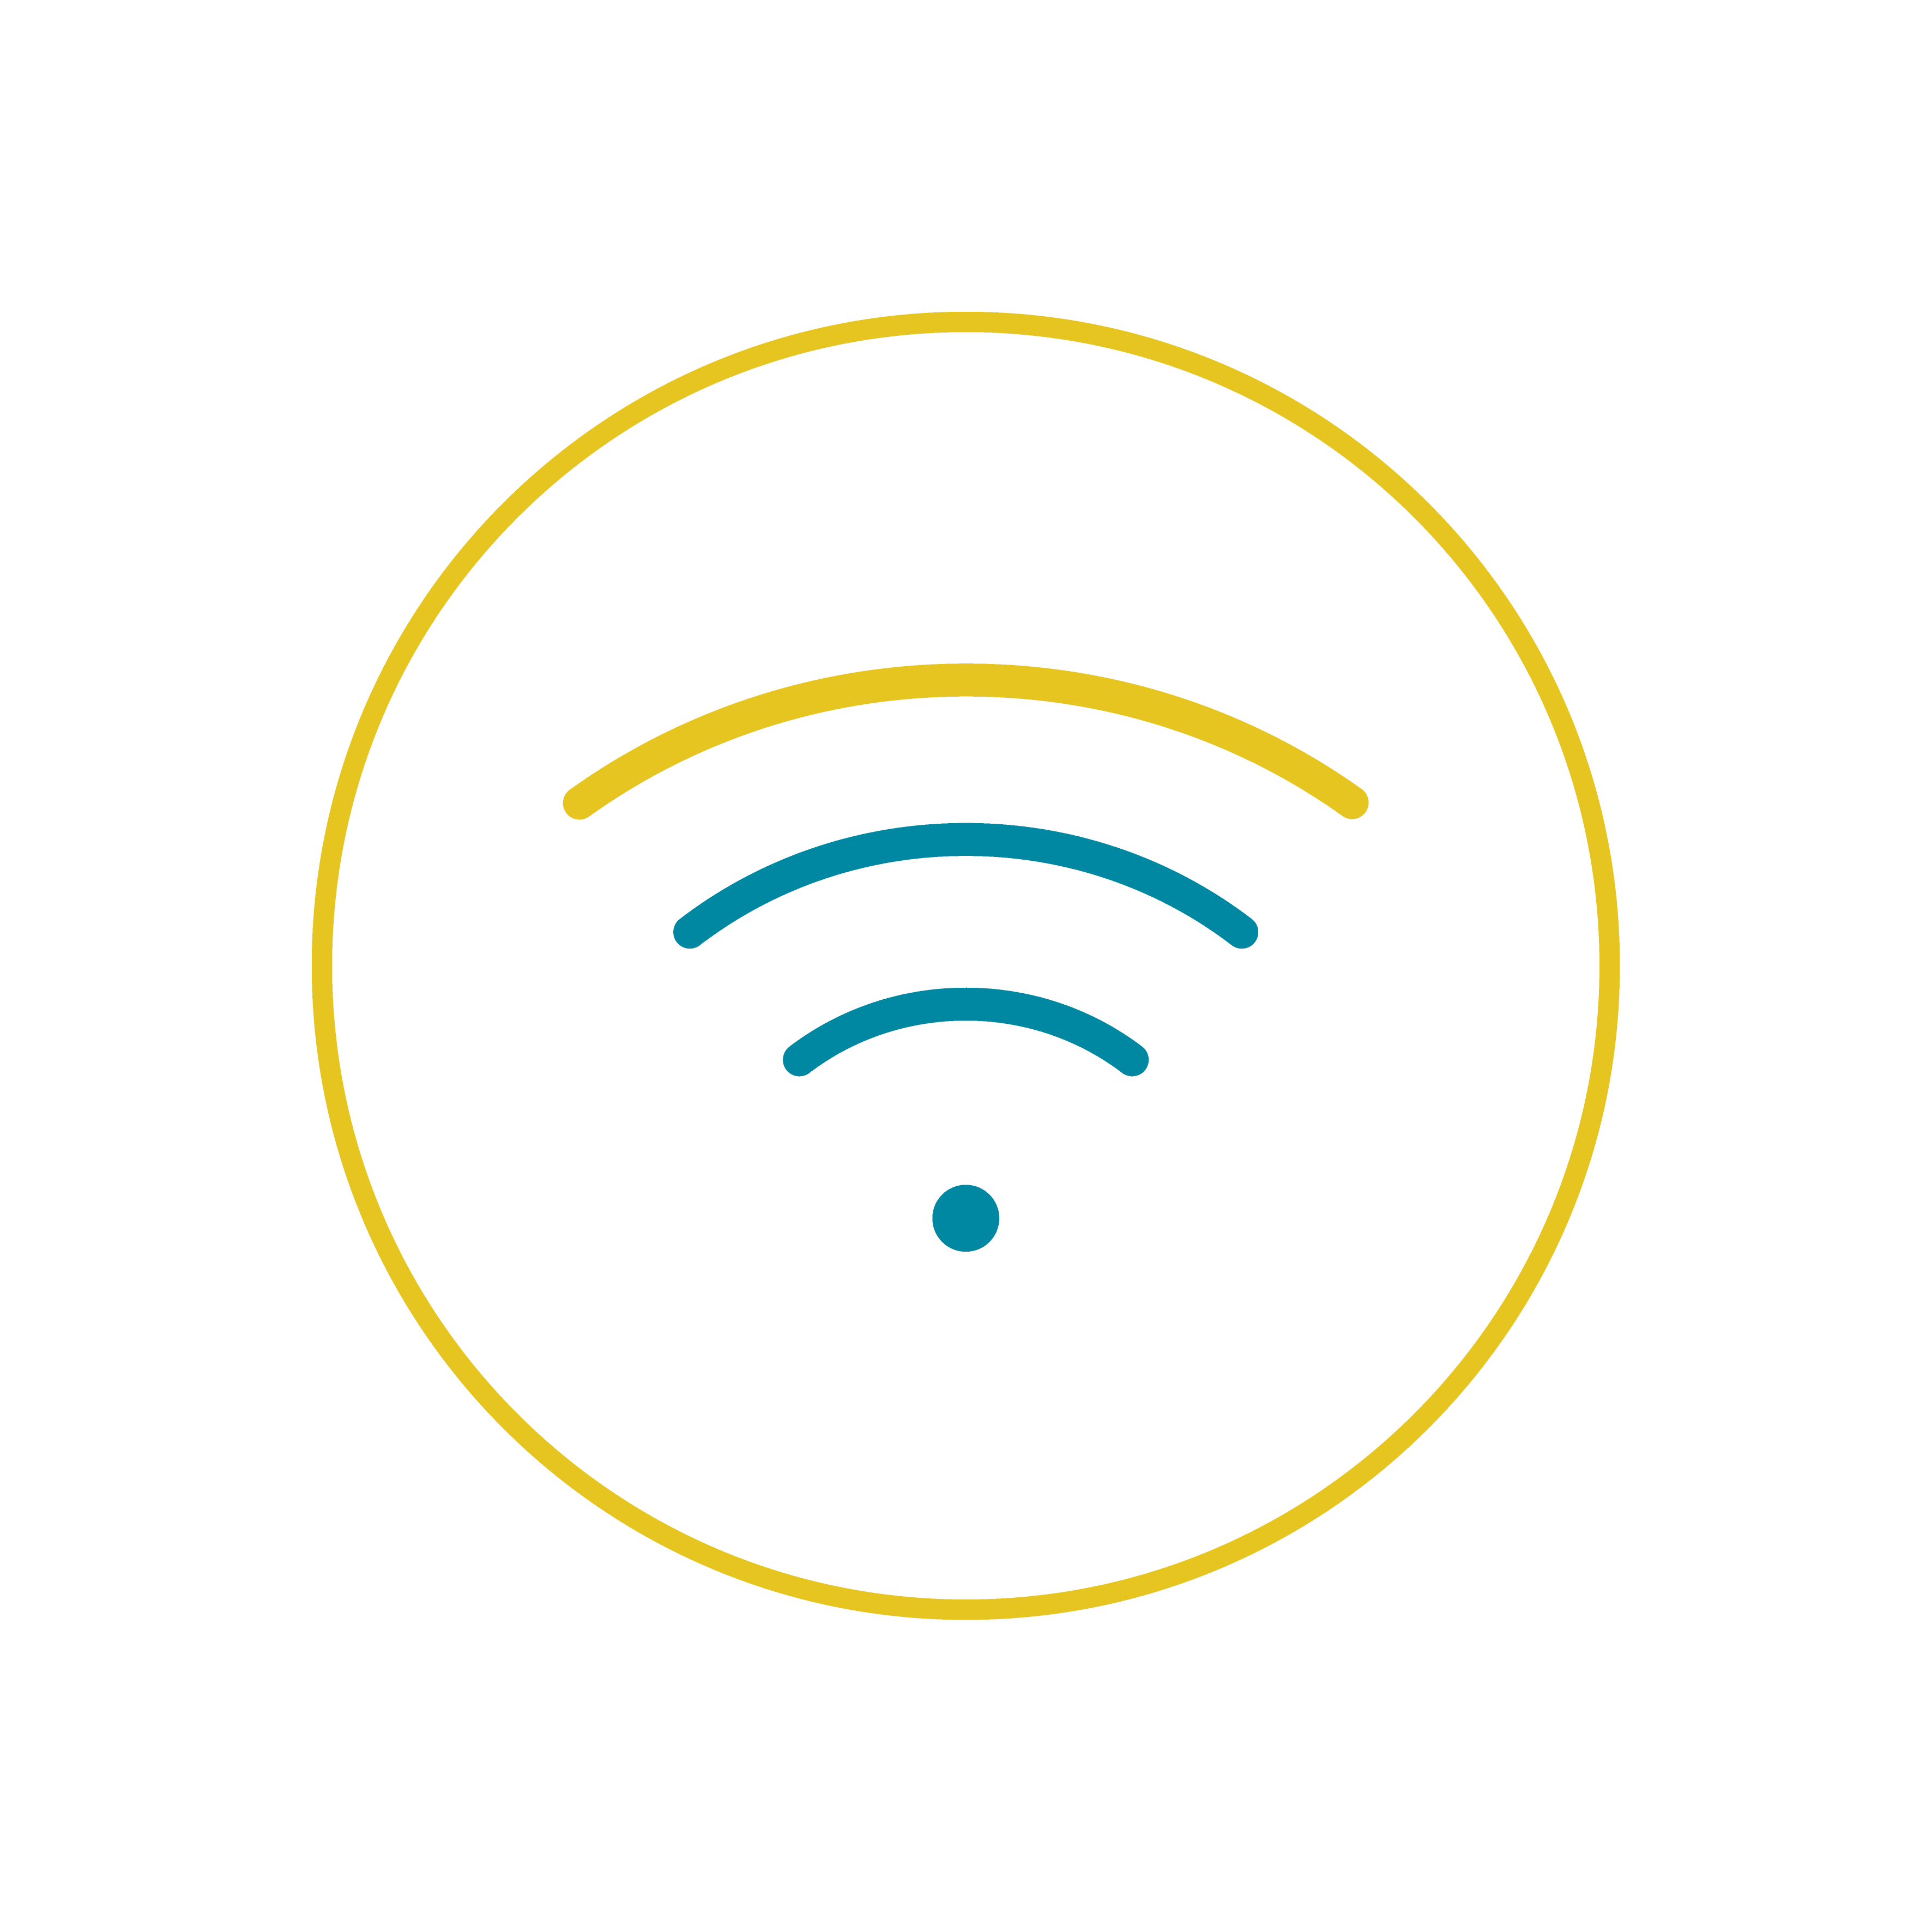 Bouton : Se connecter au Wifi